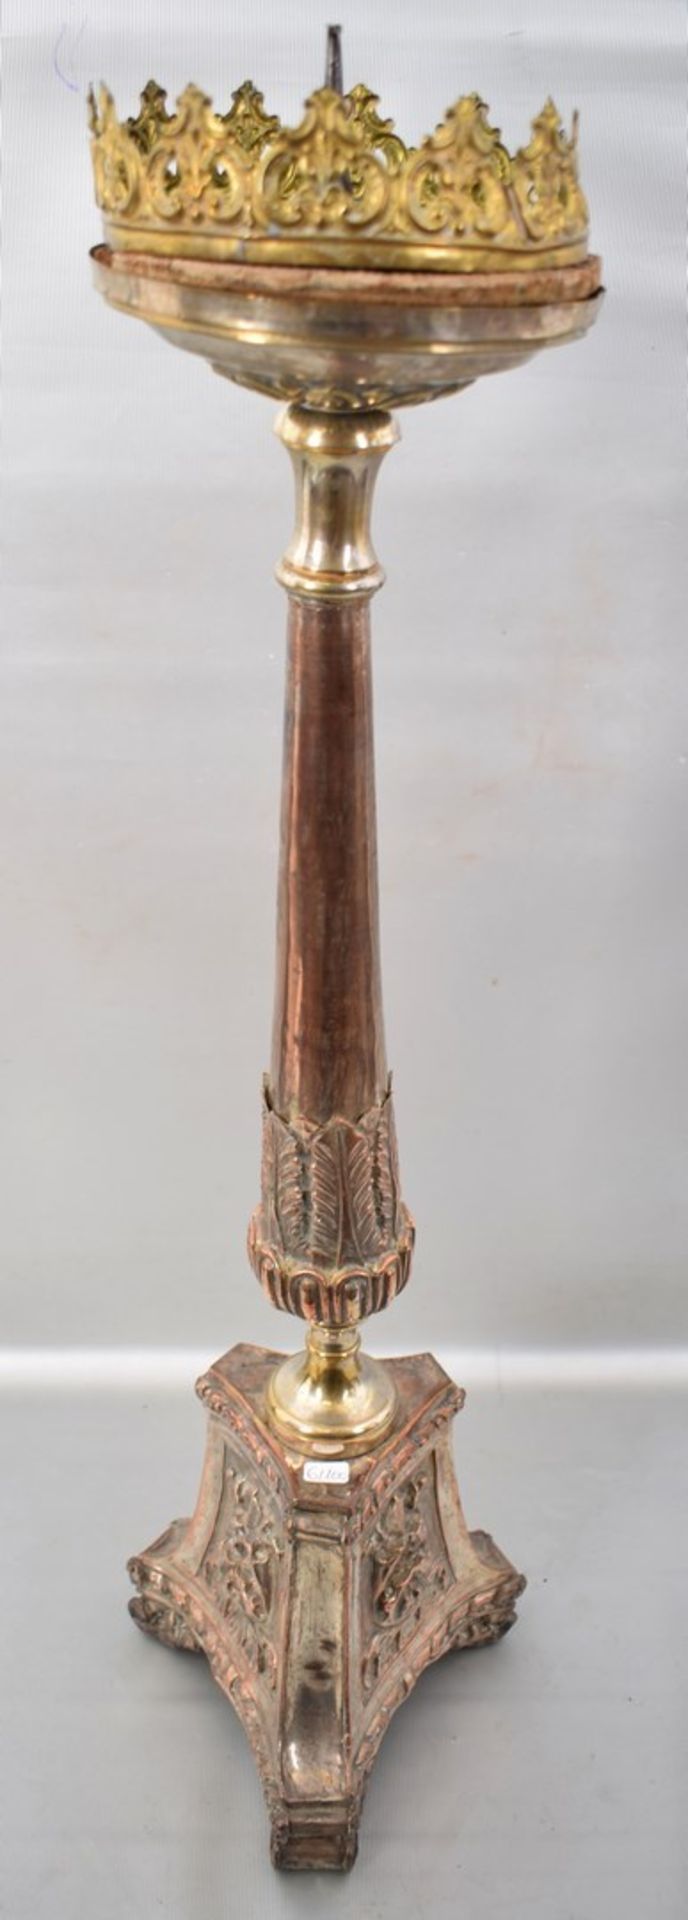 Standkerzenleuchter 1-lichtig, Kupfer, versilbert, von drei Seiten eingezogener Fuß, mit Ranken